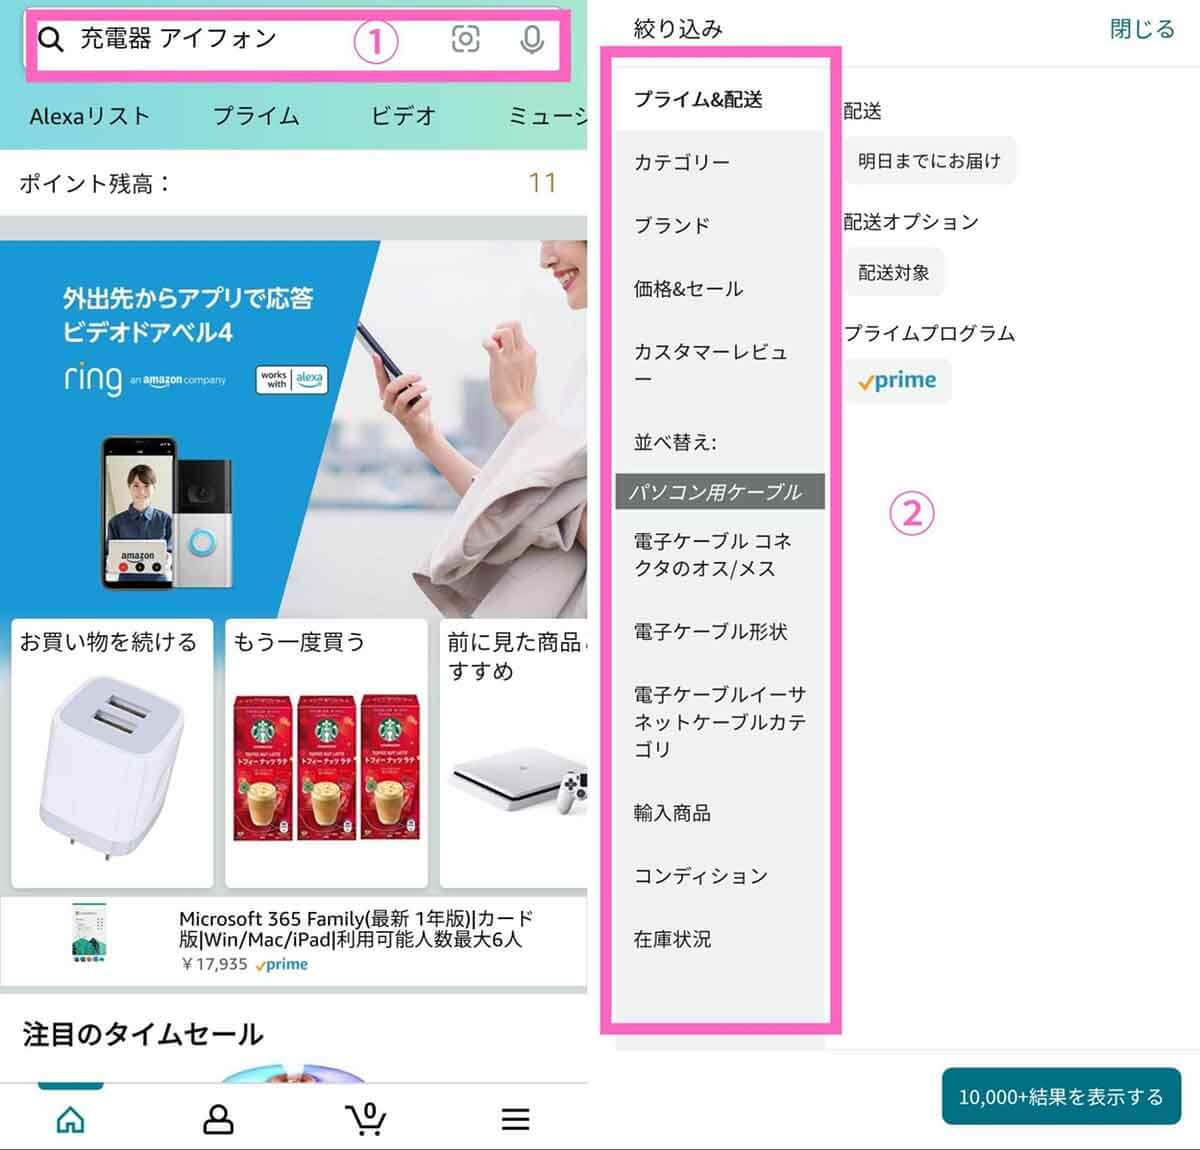 【スマホ】Amazonアプリで出品者を「Amazon.co.jp」でフィルタリングする